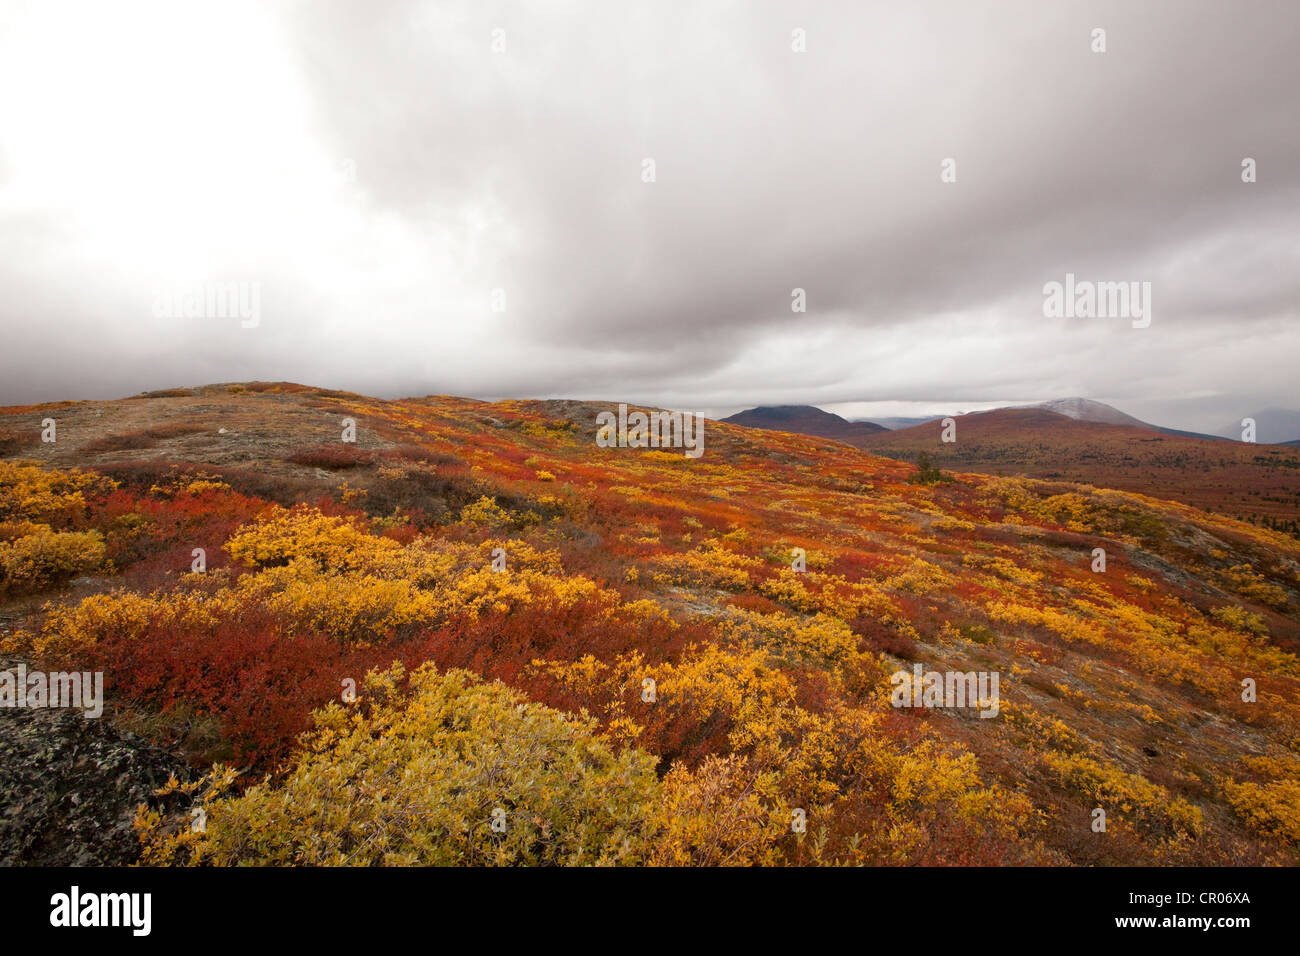 Sous-toundra alpine, l'été indien, les feuilles en couleurs d'automne, automne, près de Fish Lake, Yukon Territory, Canada Banque D'Images